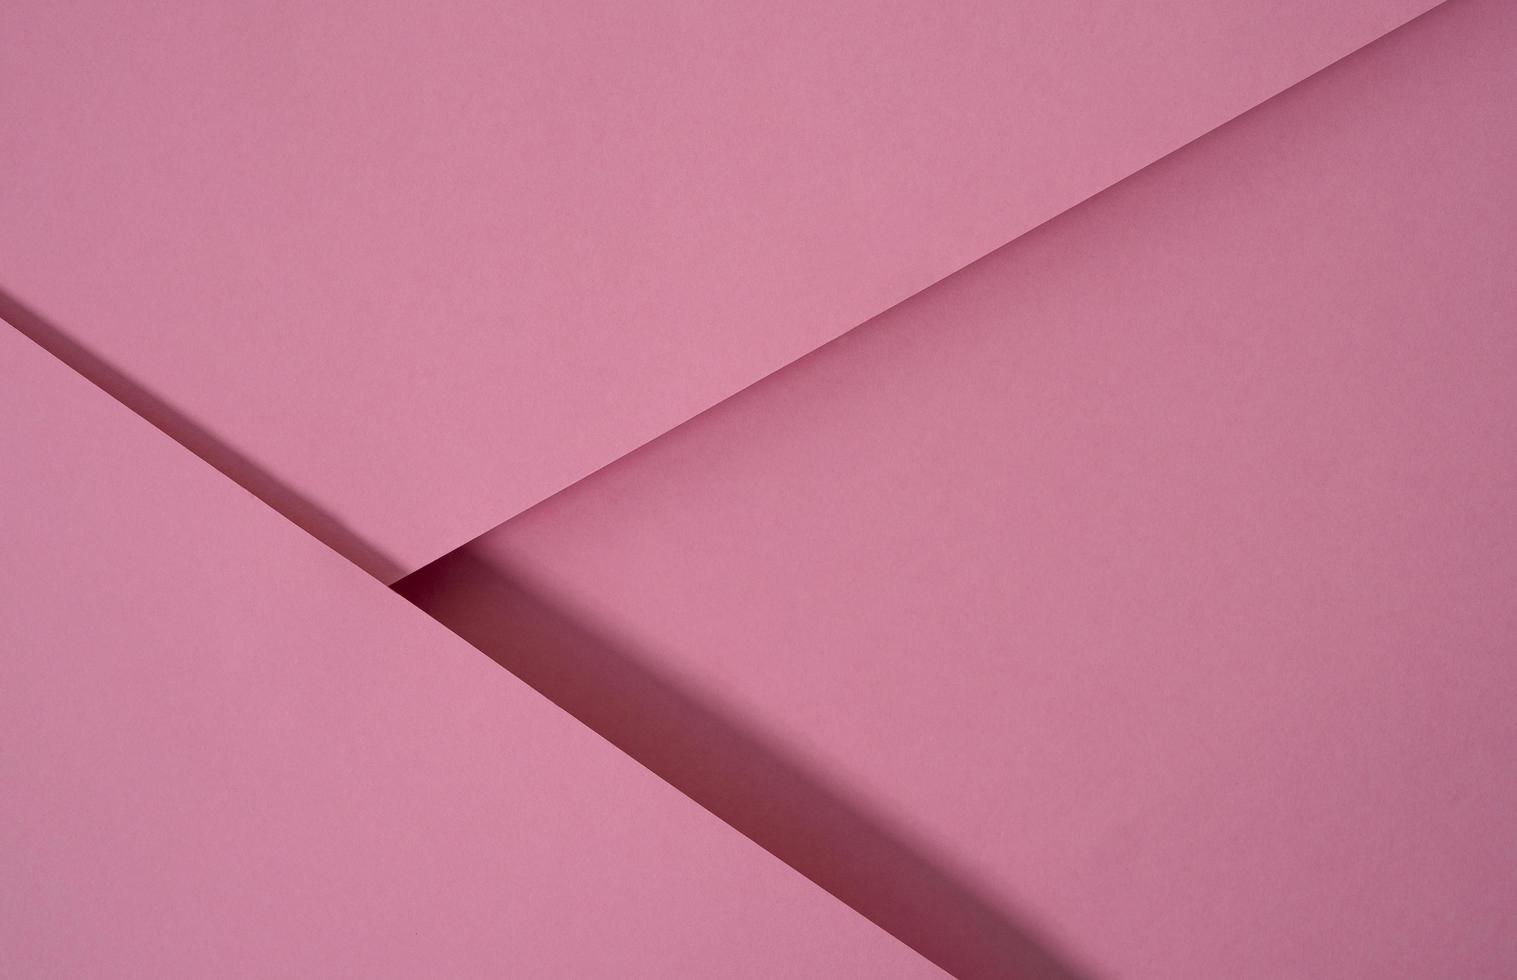 abstracte pop-up papier achtergrond in roze. abstracte arrangementen bouwen een geometrische textuur voor behang, posters, flyers, enz. foto